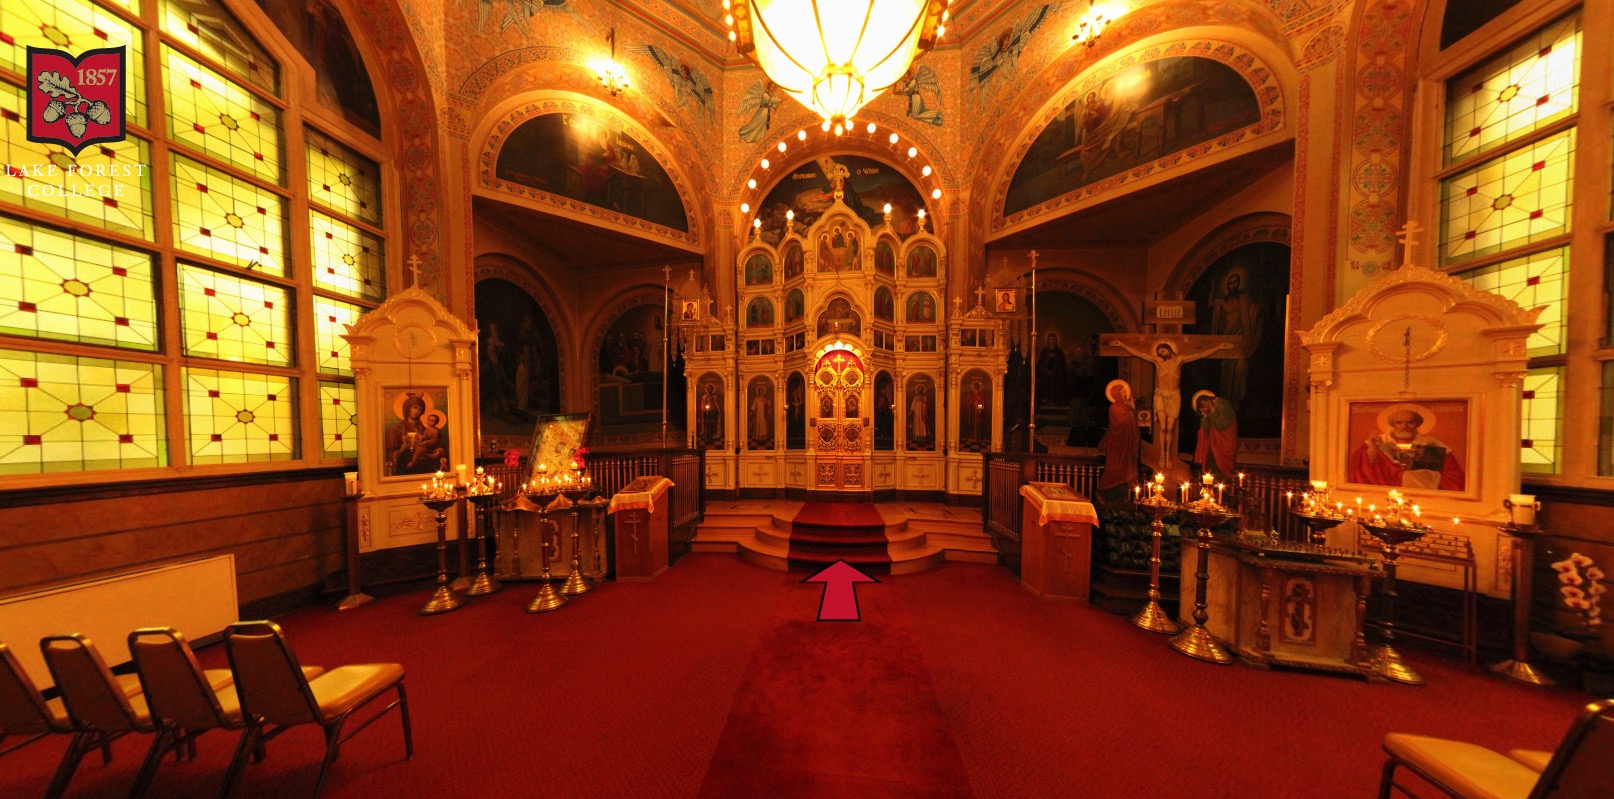 Cathédrale orthodoxe de la sainte-trinité à chicago – un trésor d’architecture et de spiritualité